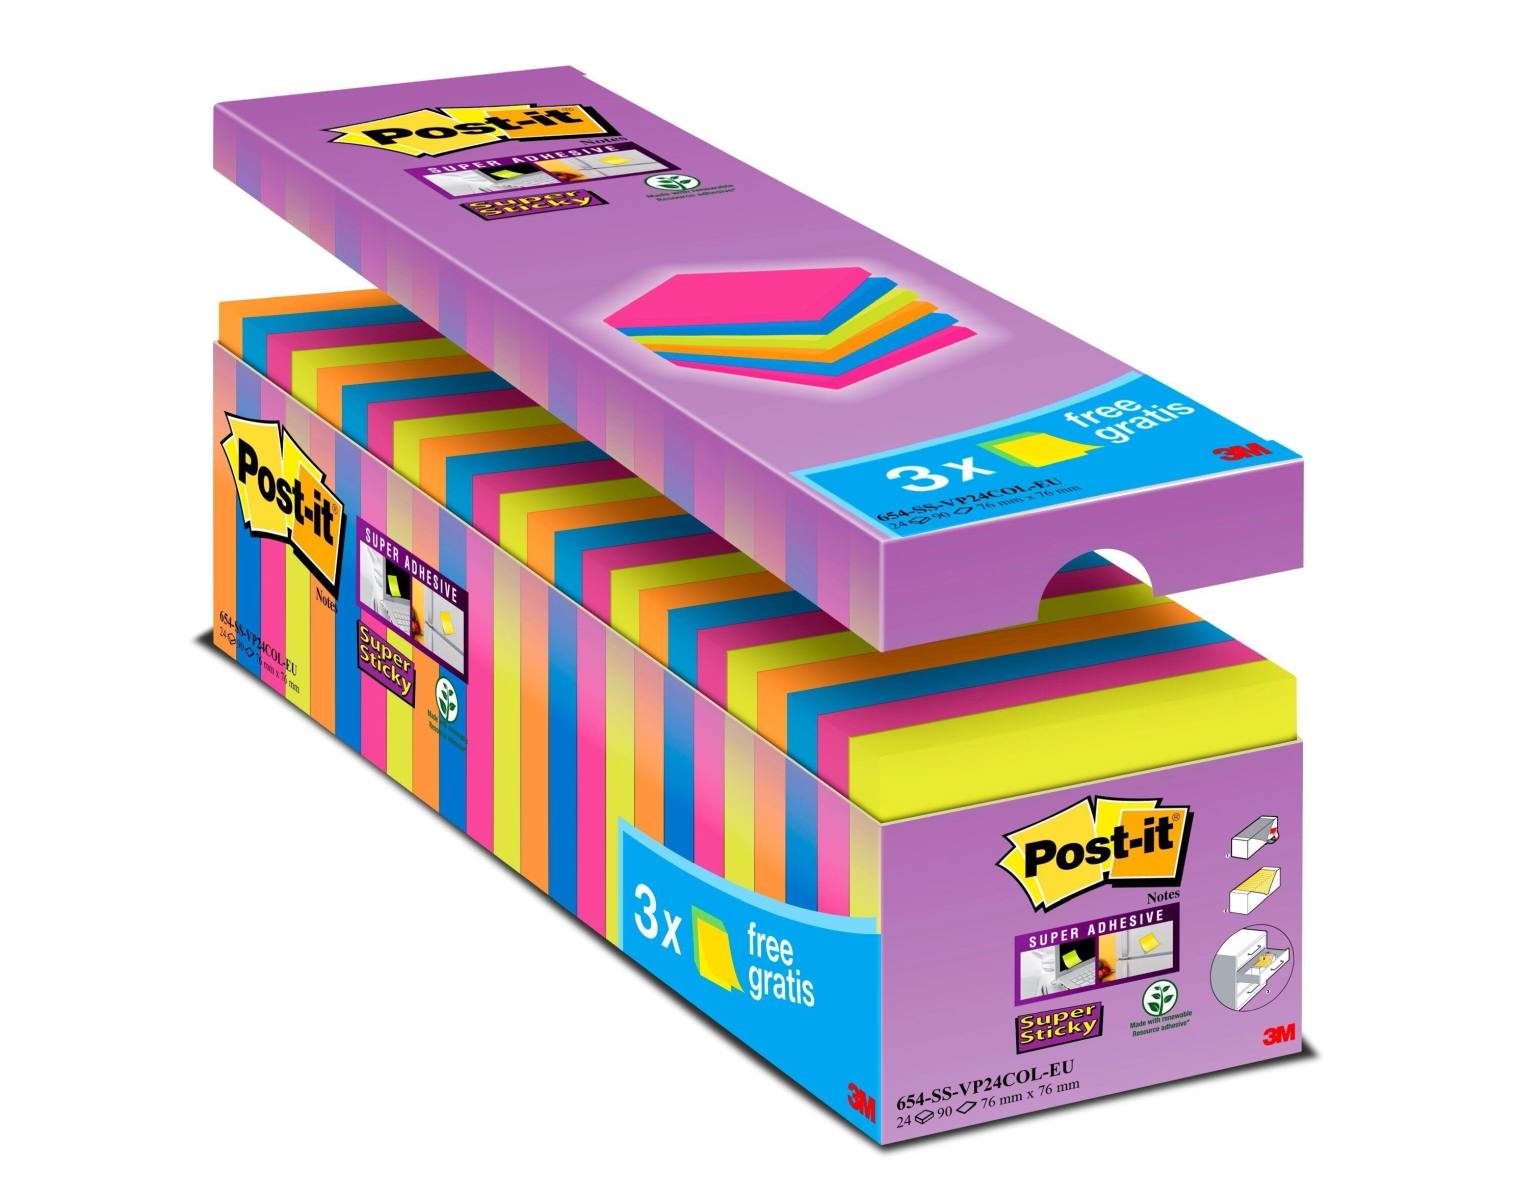 3M Post-it Super Sticky Notes Promozione 654SE24P, 24 blocchetti da 90 fogli a prezzo speciale, colori assortiti, 76 mm x 76 mm